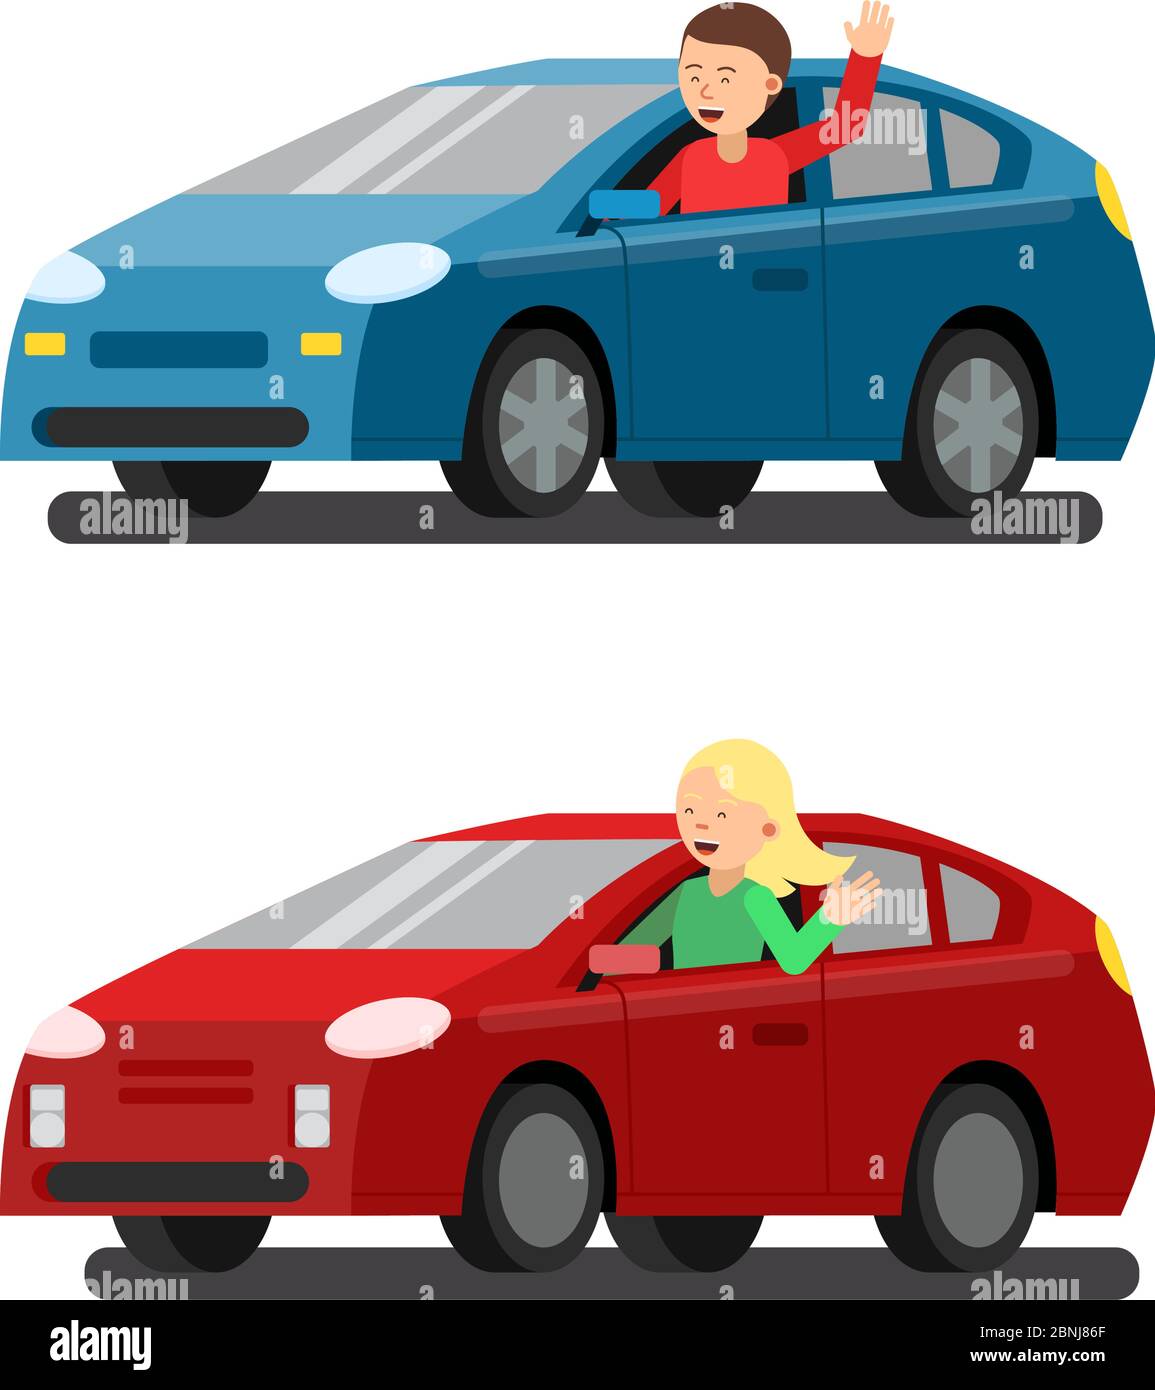 Illustrazione di piloti maschi e femmine in auto. Immagini vettoriali in stile piatto Illustrazione Vettoriale